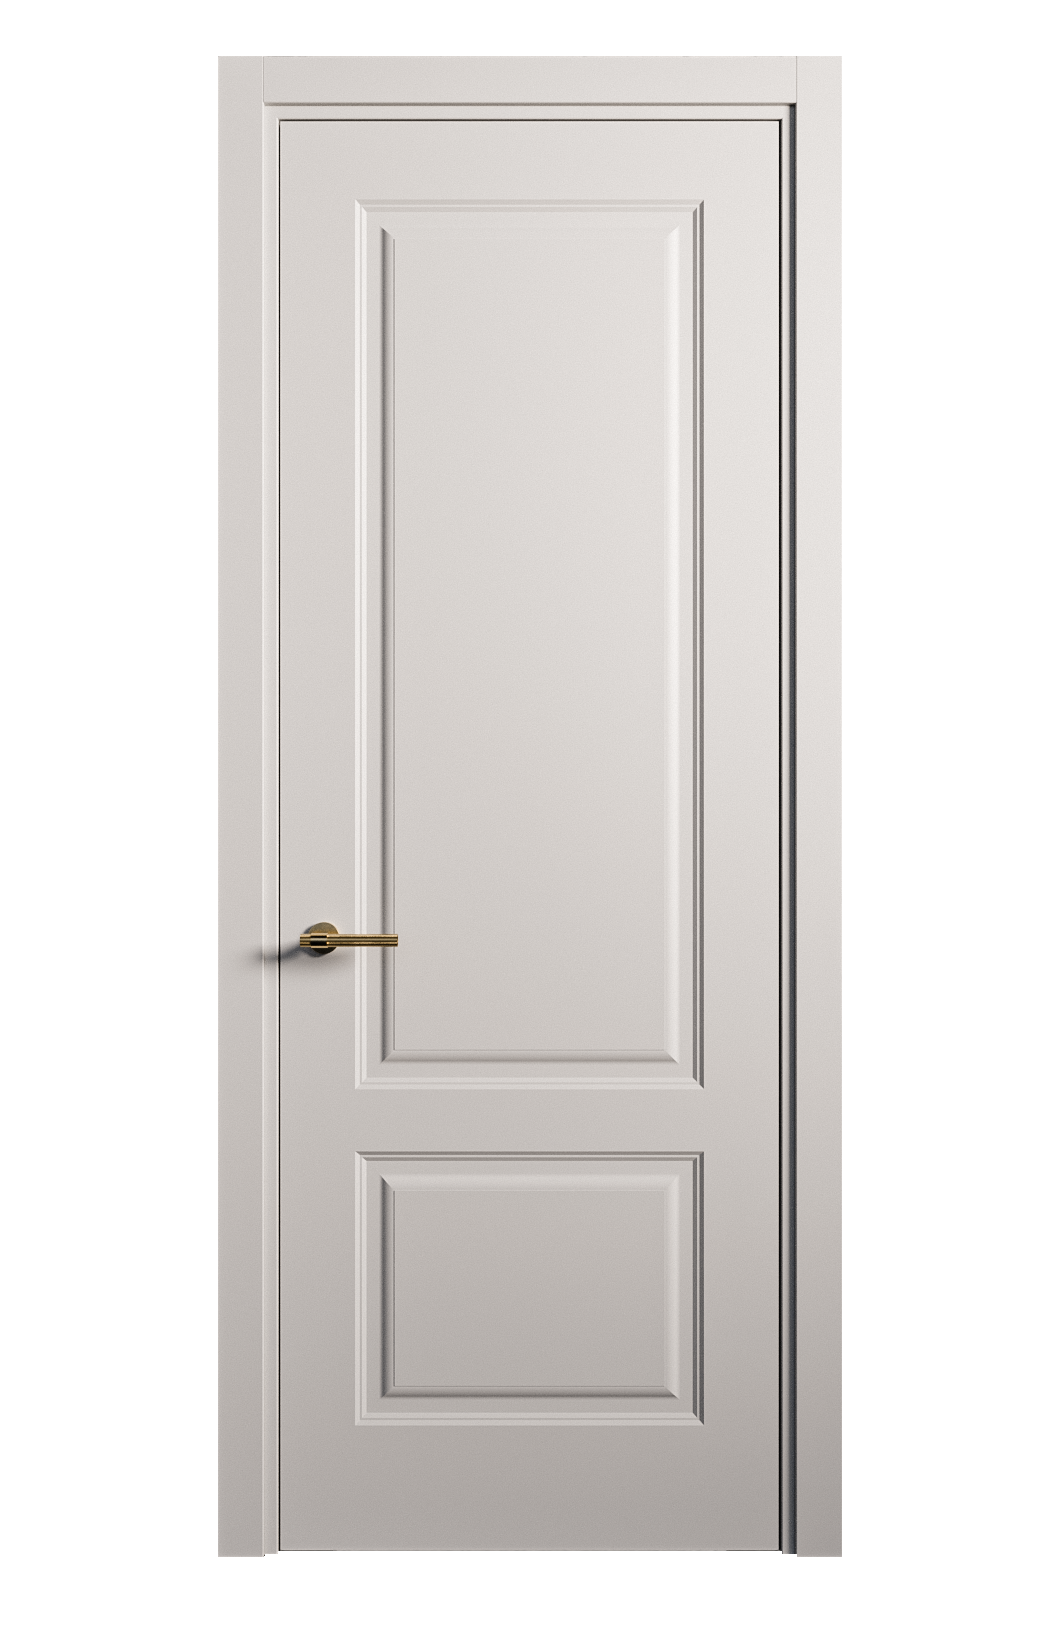 Межкомнатная дверь Вита-1 глухая эмаль ral 7047 26418